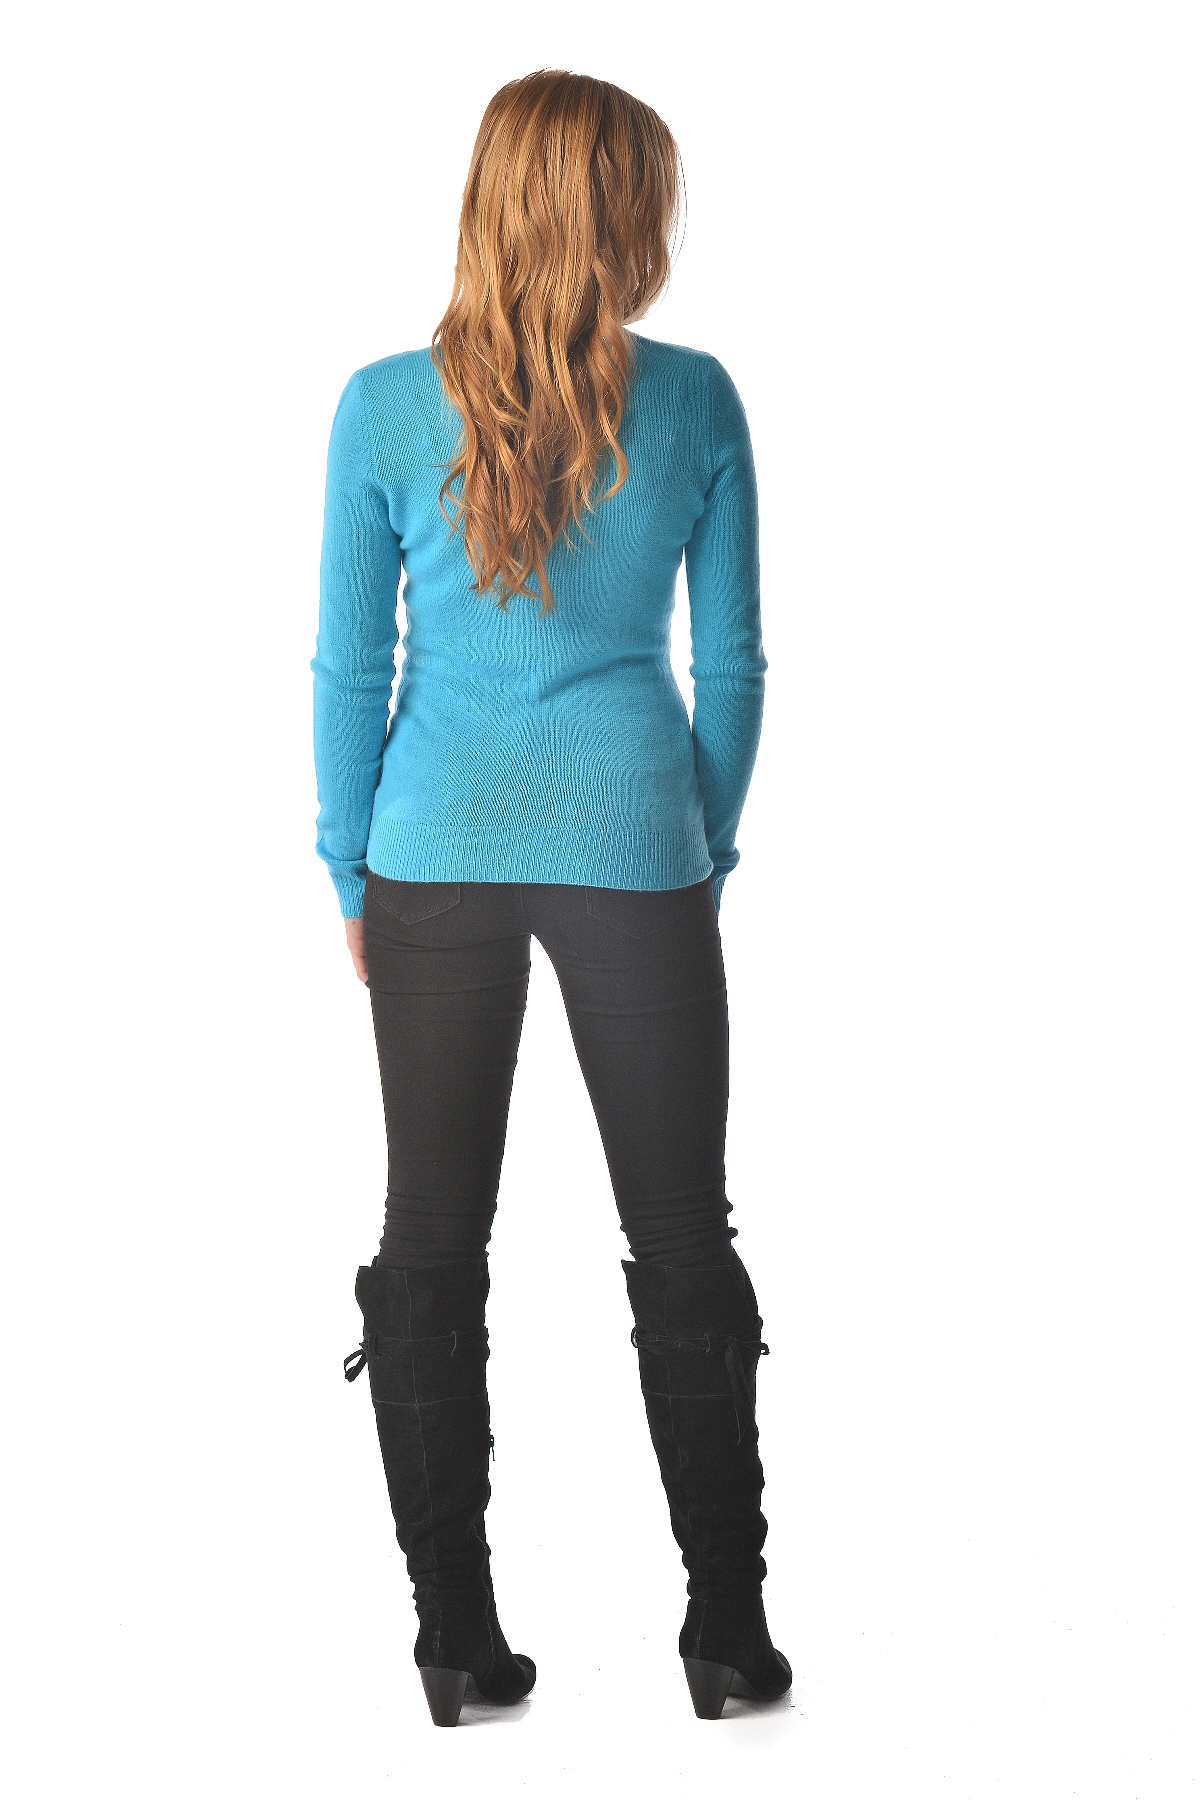 Pure Cashmere V-Neck Spring Sweater for Women (Camel, Medium)